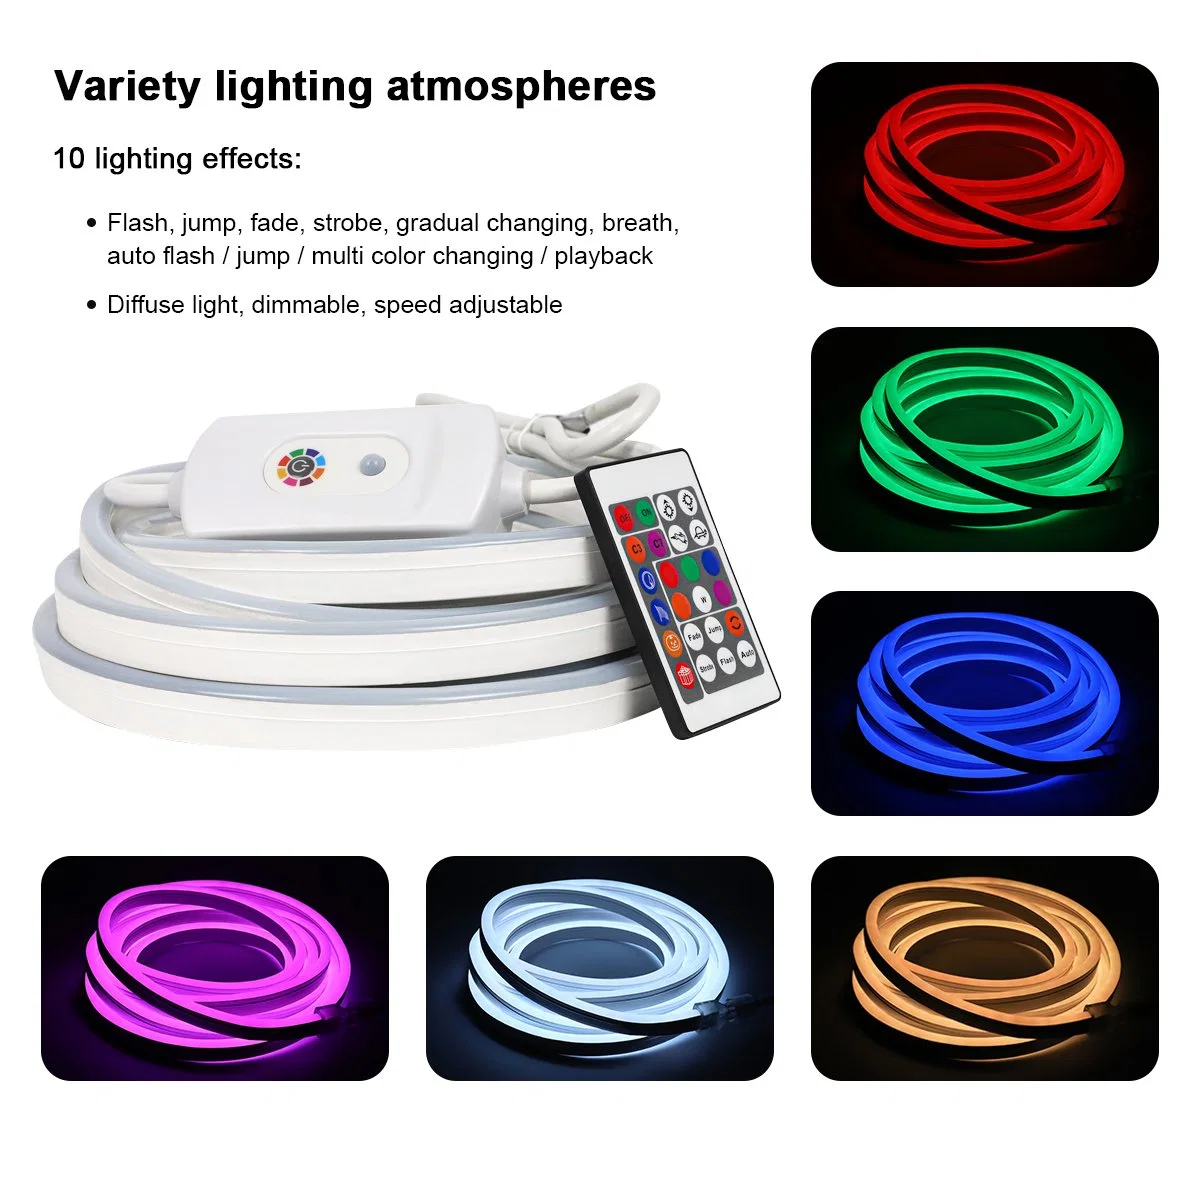 Горячие продажи продукта неоновые лампы RGB гибкий ПВХ газа водонепроницаемый освещения